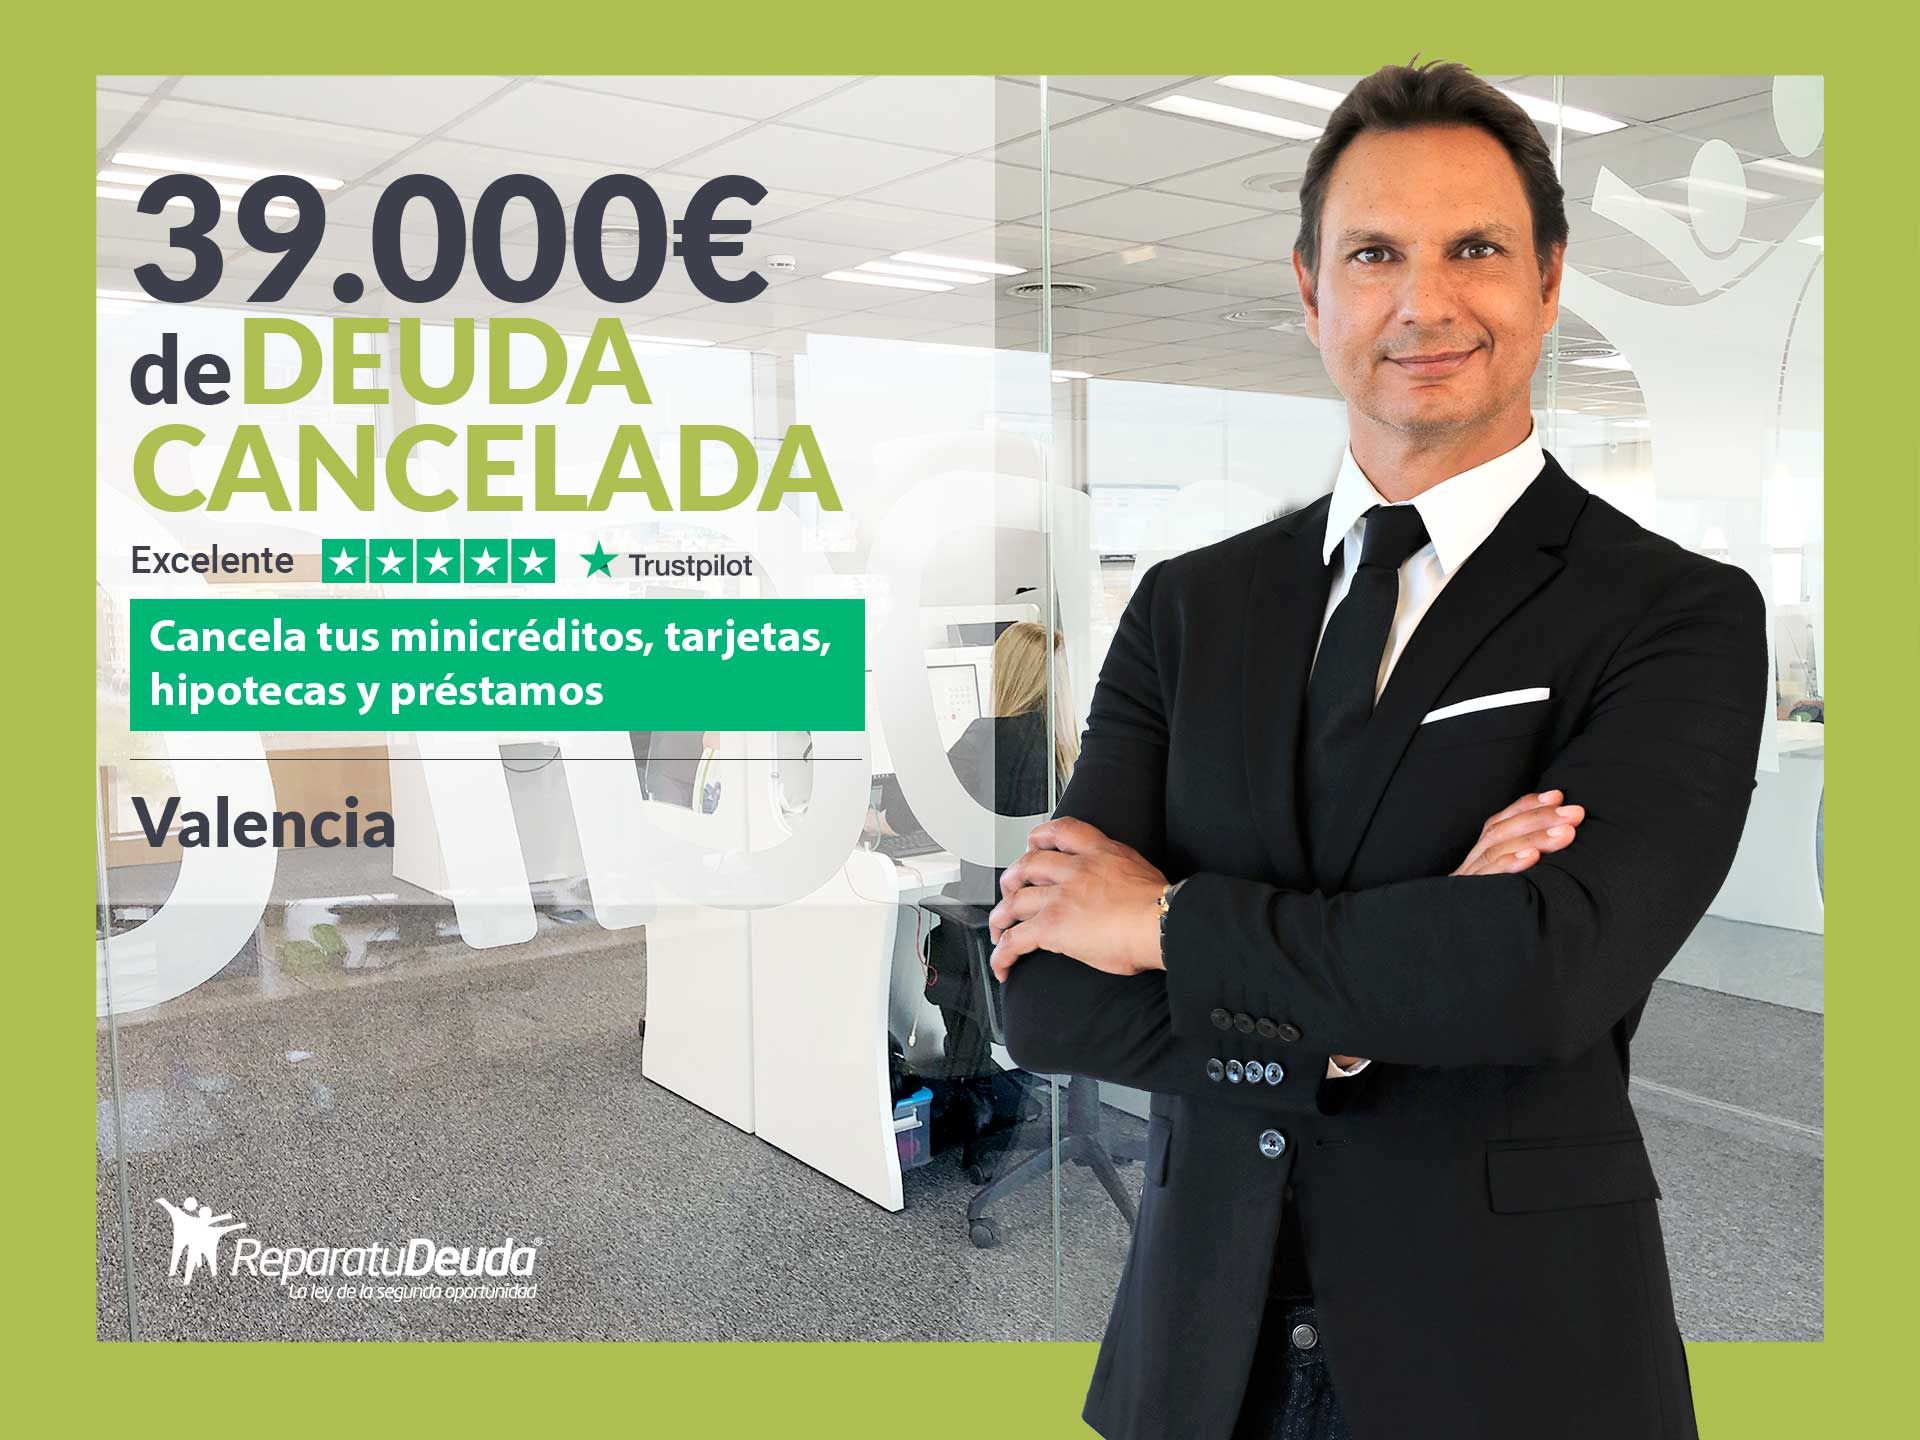 Repara tu Deuda Abogados cancela 39.000? en Valencia gracias a la Ley de Segunda Oportunidad